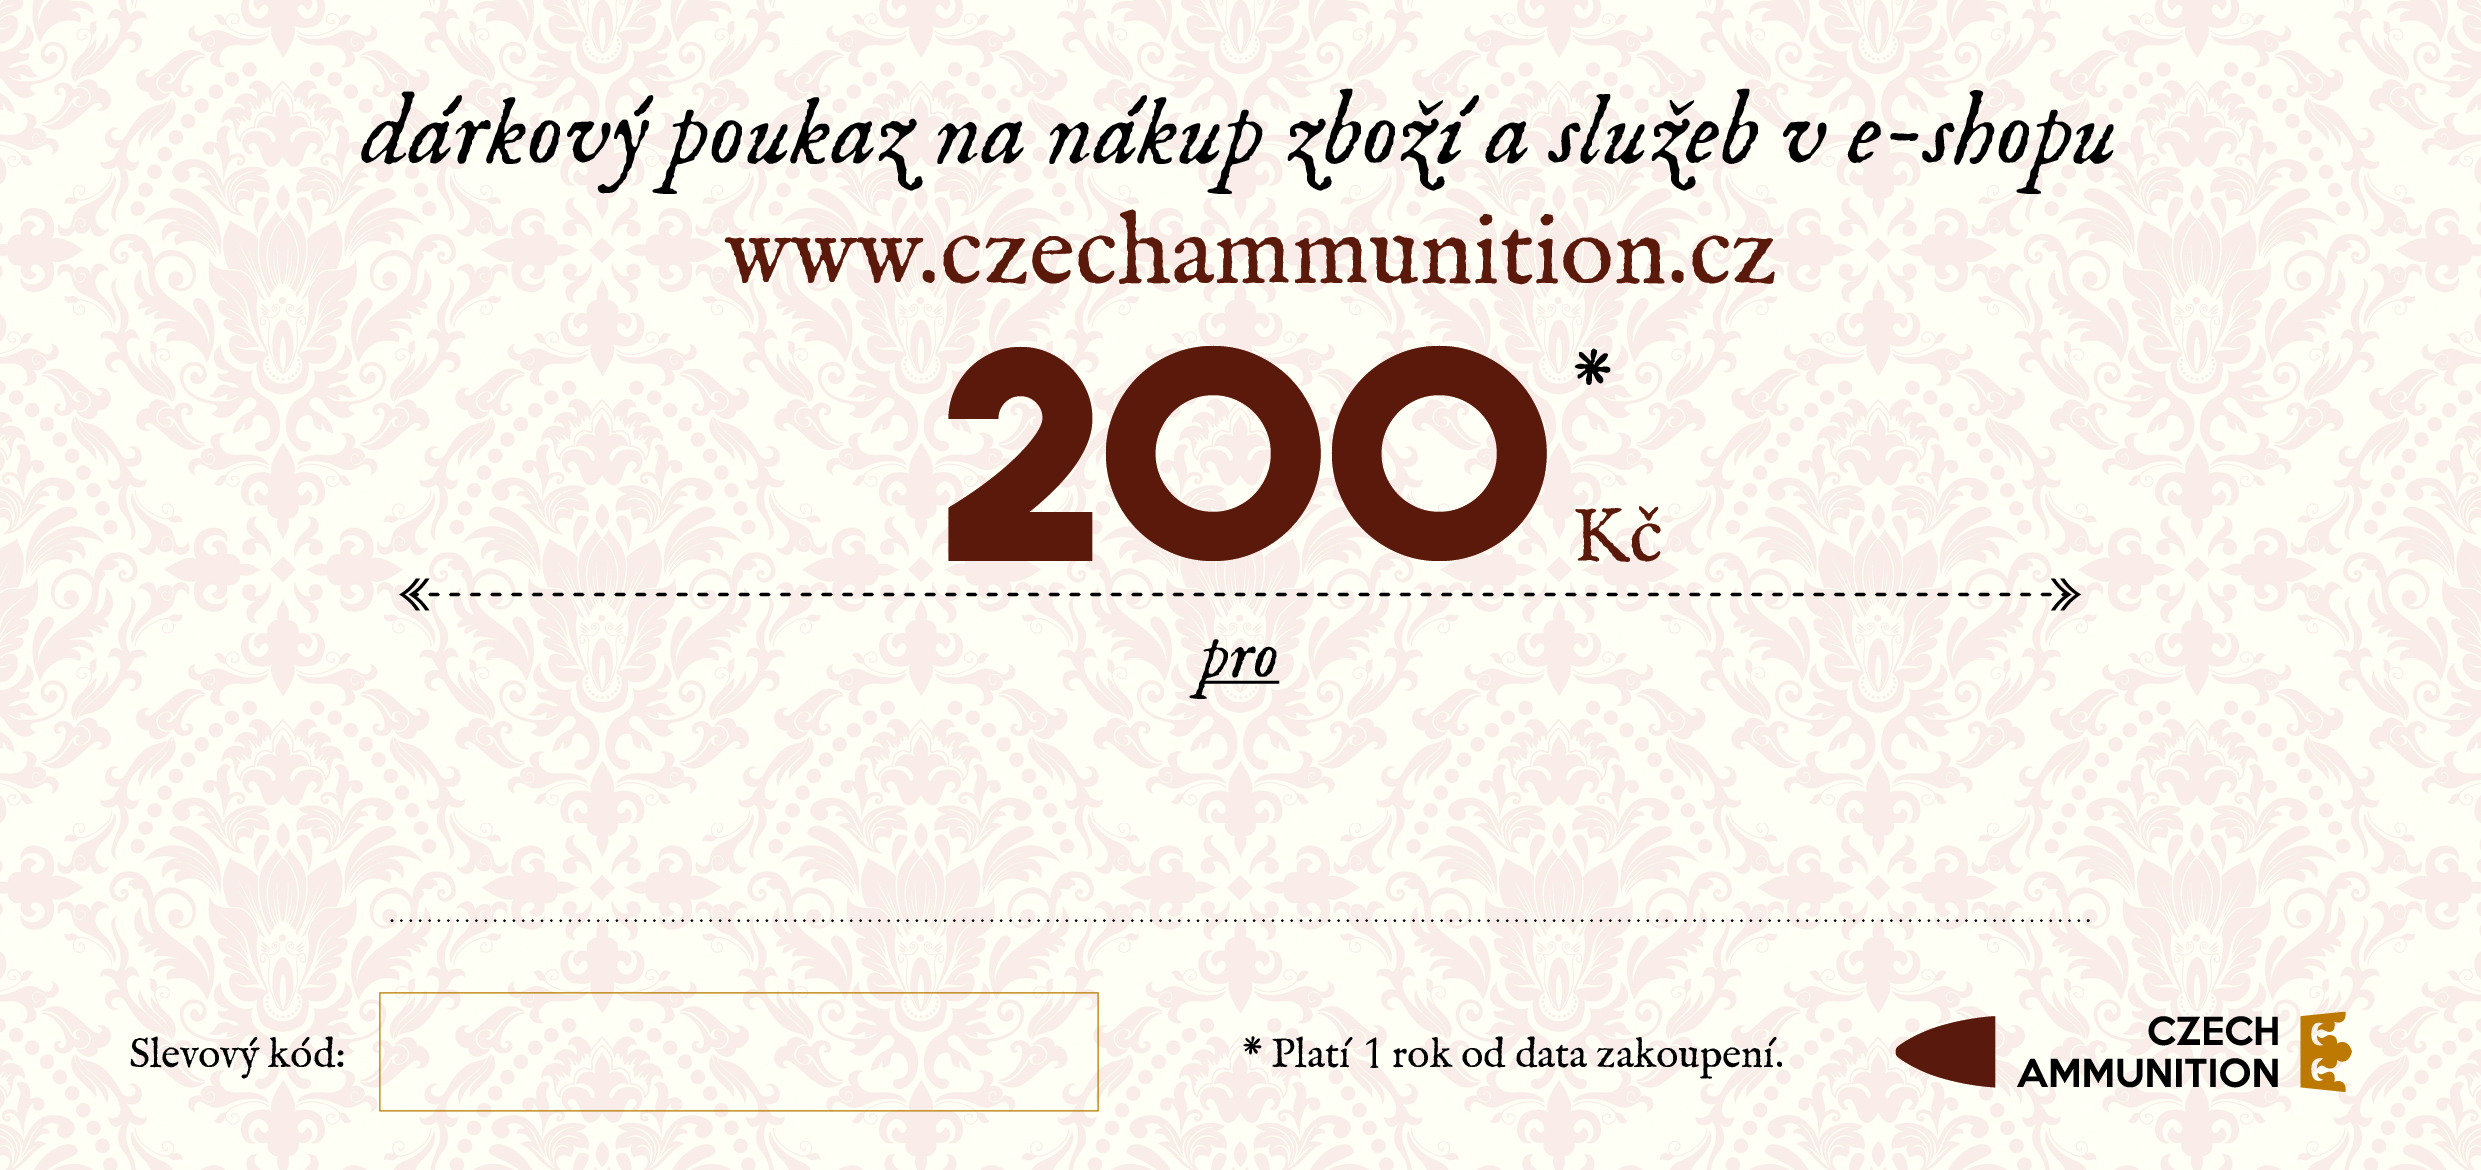 Dárkový poukaz na nákup v e-shopu www.czechammunition.cz v hodnotě 200 Kč